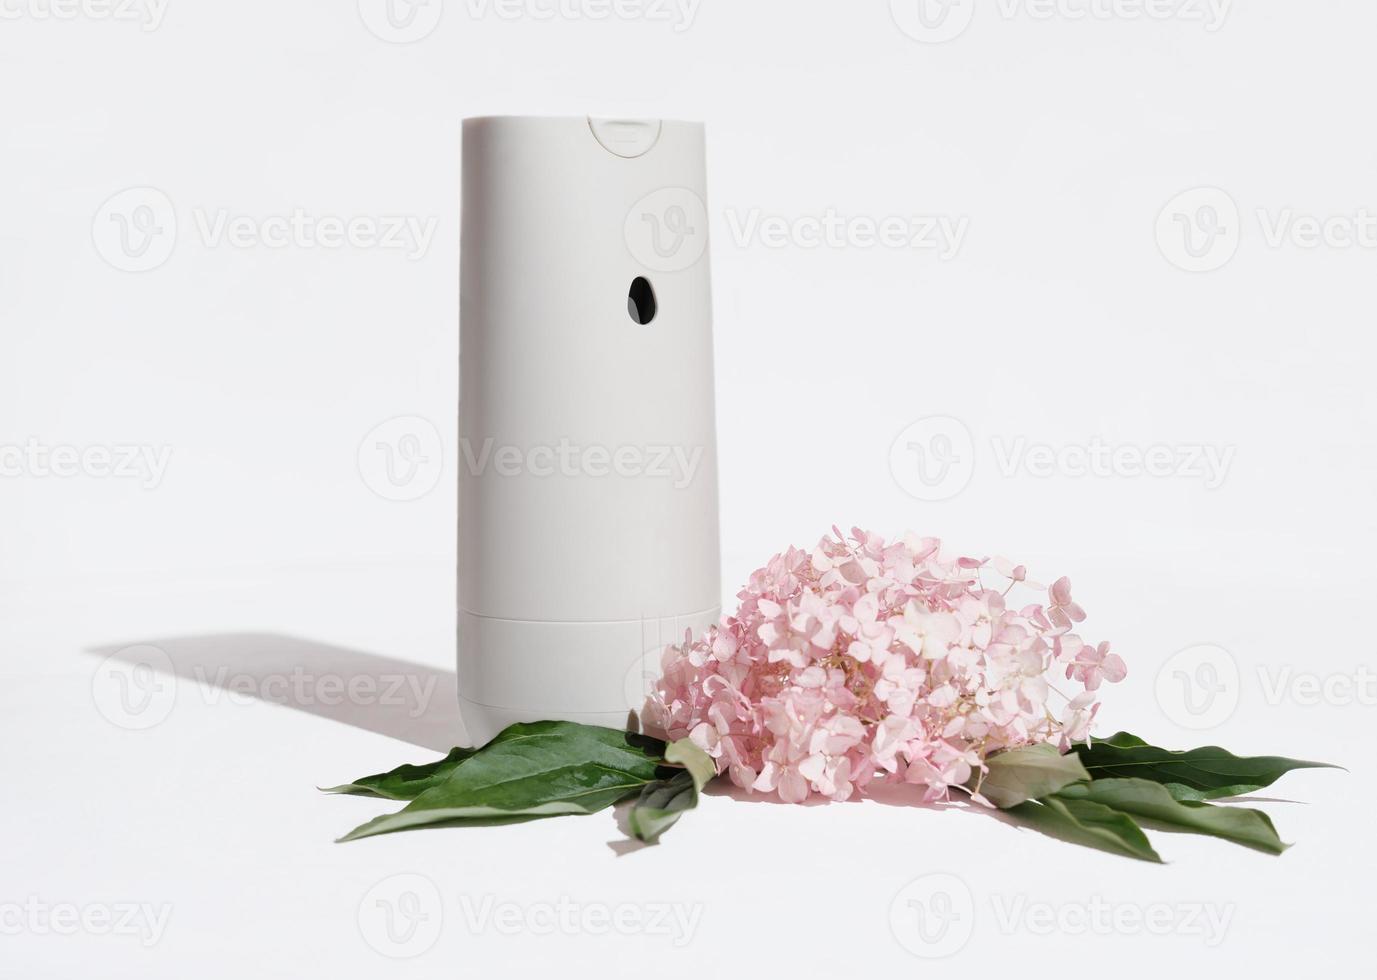 automatische huisluchtverfrisser naast roze hortensia bloemen op een witte achtergrond. huisgeuren en geuren voor een gezellige huiselijke sfeer foto